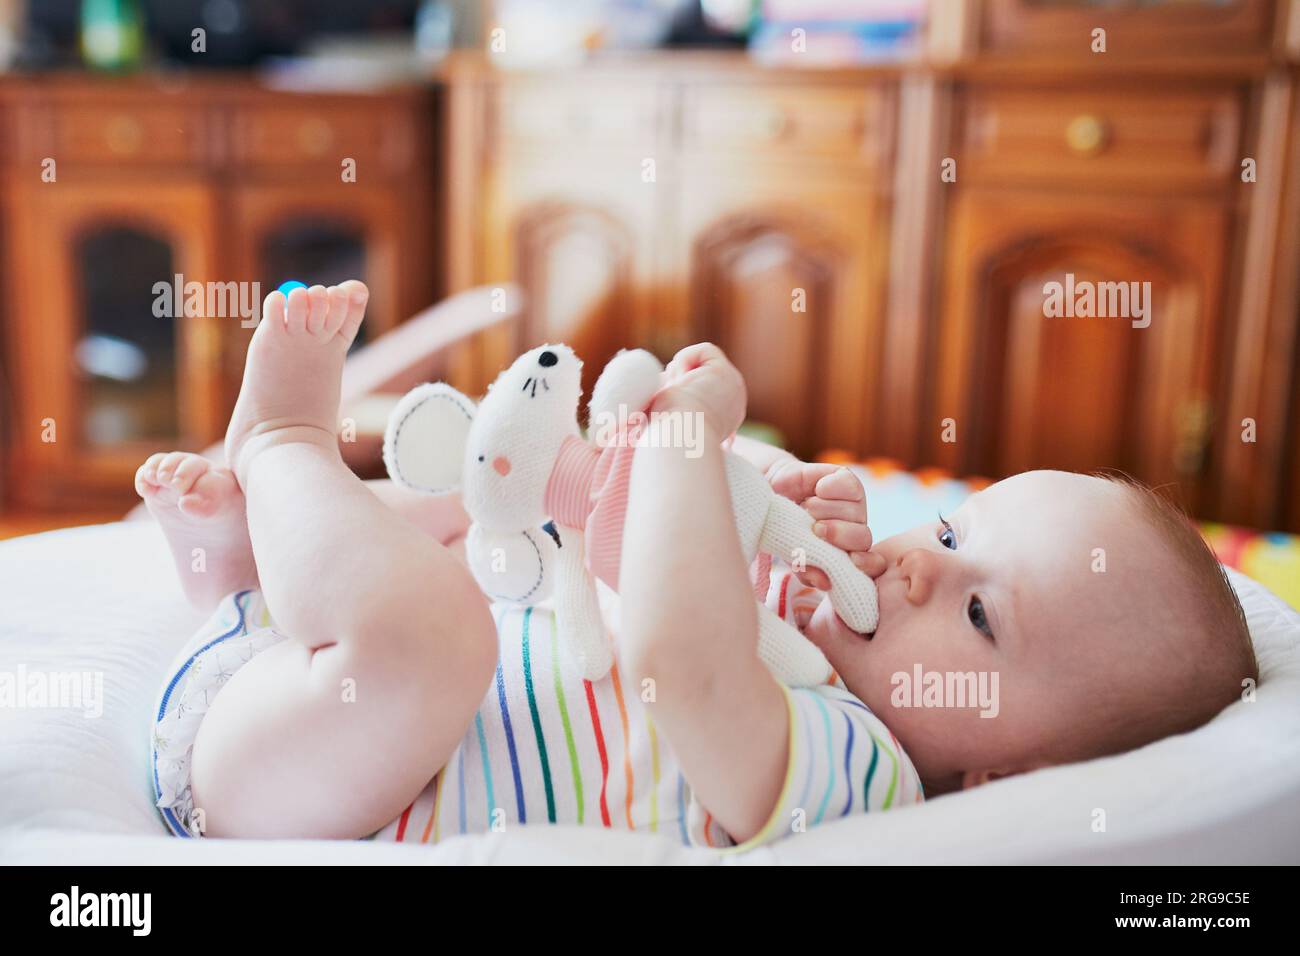 Bozzolo del bambino immagini e fotografie stock ad alta risoluzione - Alamy